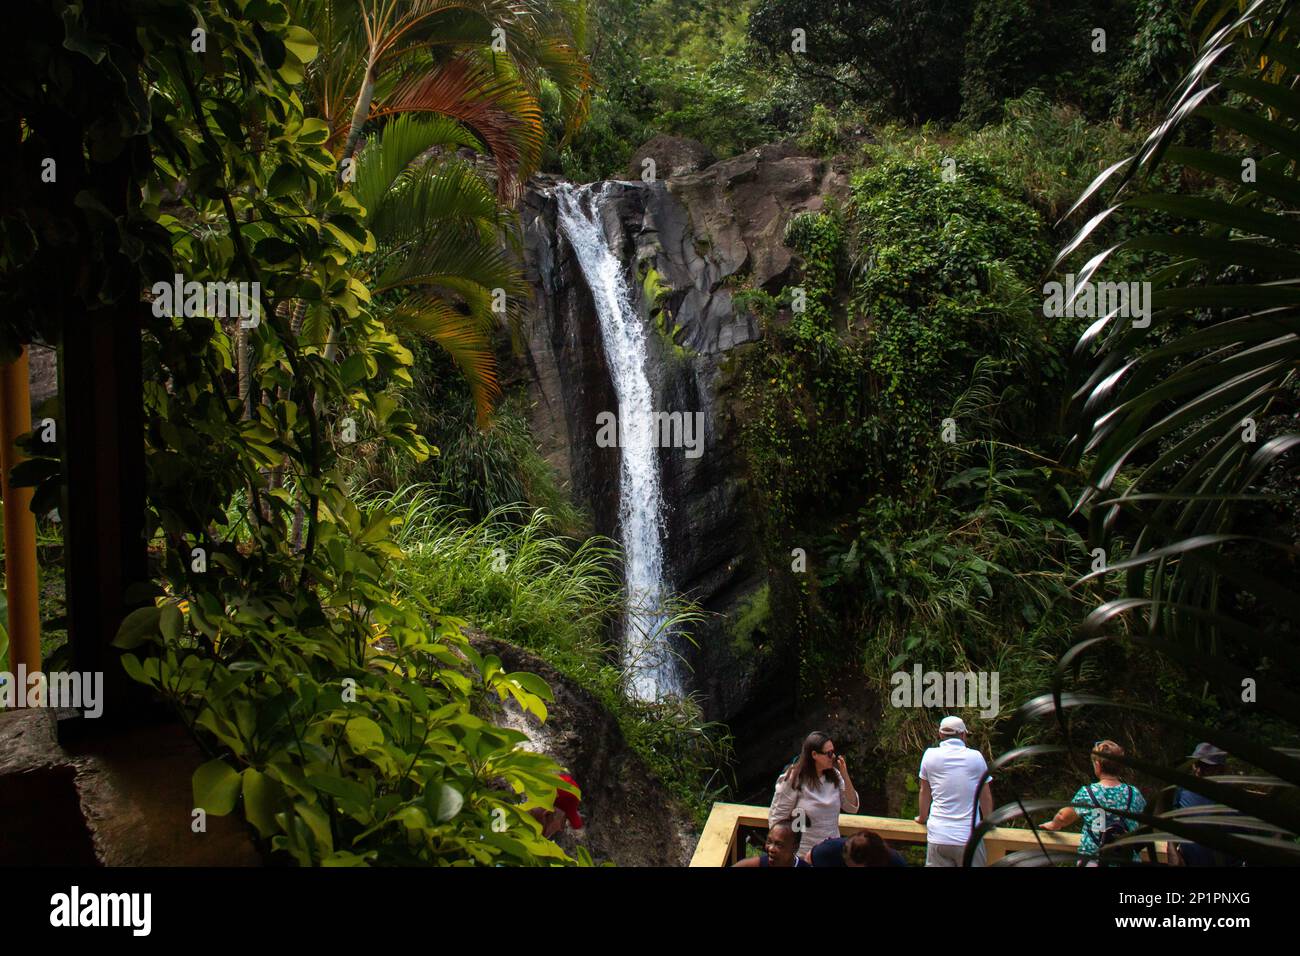 Chutes de Concord, Grenade - 3 mars 2023 : les touristes nagent dans l'eau courante des chutes de Concord, une chute d'eau locale sur l'île du sud des Caraïbes. Banque D'Images